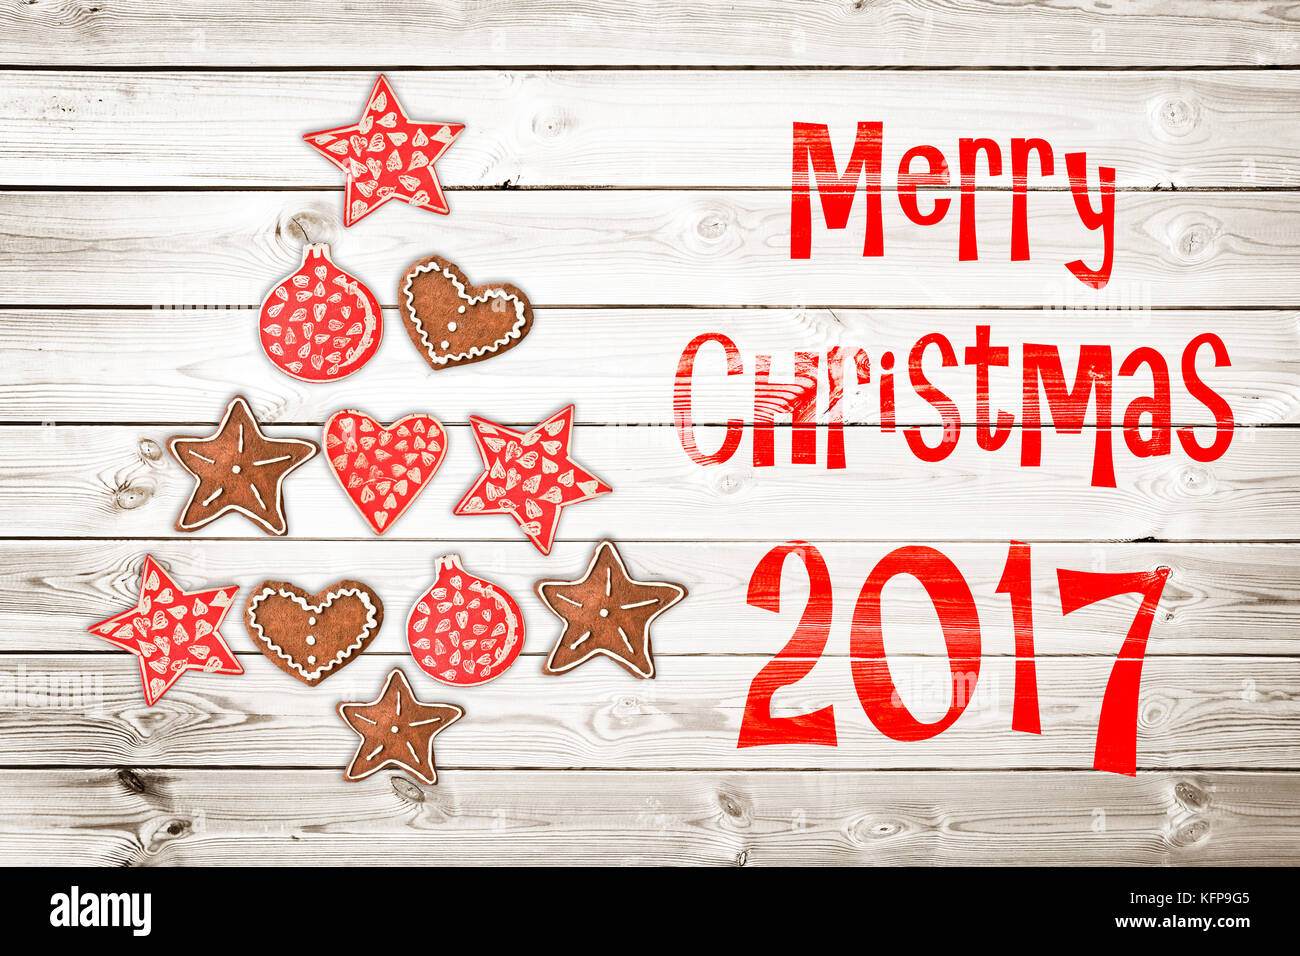 Natale biglietto di auguri 2017, ornamenti in stile rustico su tavole di legno sfondo creando la forma di un albero di natale Foto Stock